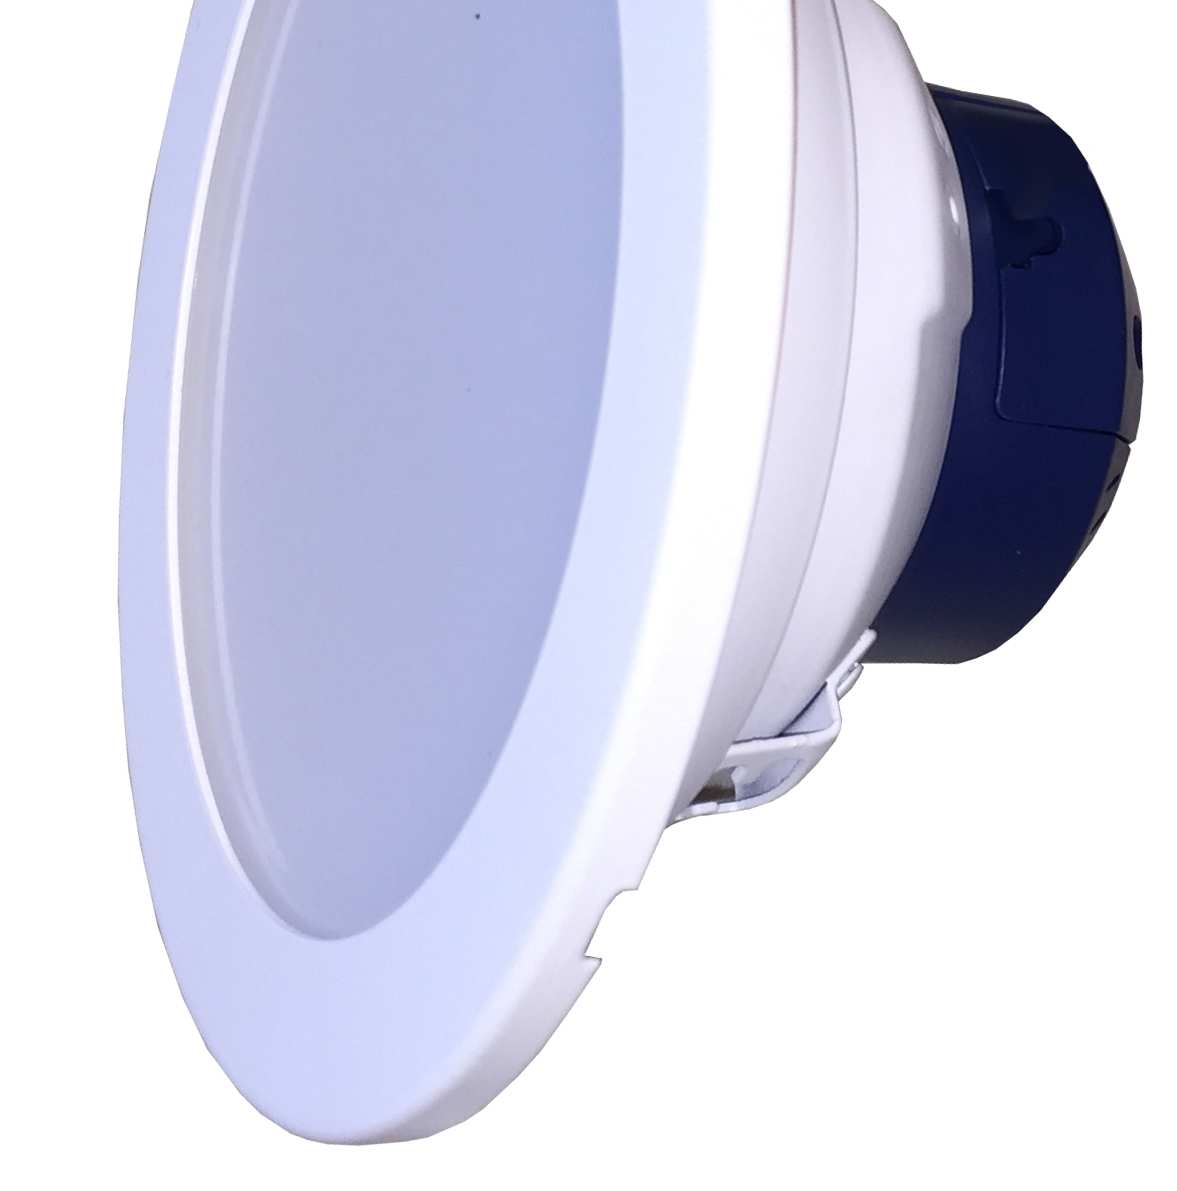 Oprawy wewnętrzne wpuszczane 5 DL 10 ECO LED, DL 15 ECO LED Oprawa typu downlight wpuszczana w sufit podwieszany Żywotność: 30000h Moc: 12W i 23W Zasilacz: Tridonic Obudowa: aluminium, kolor biały